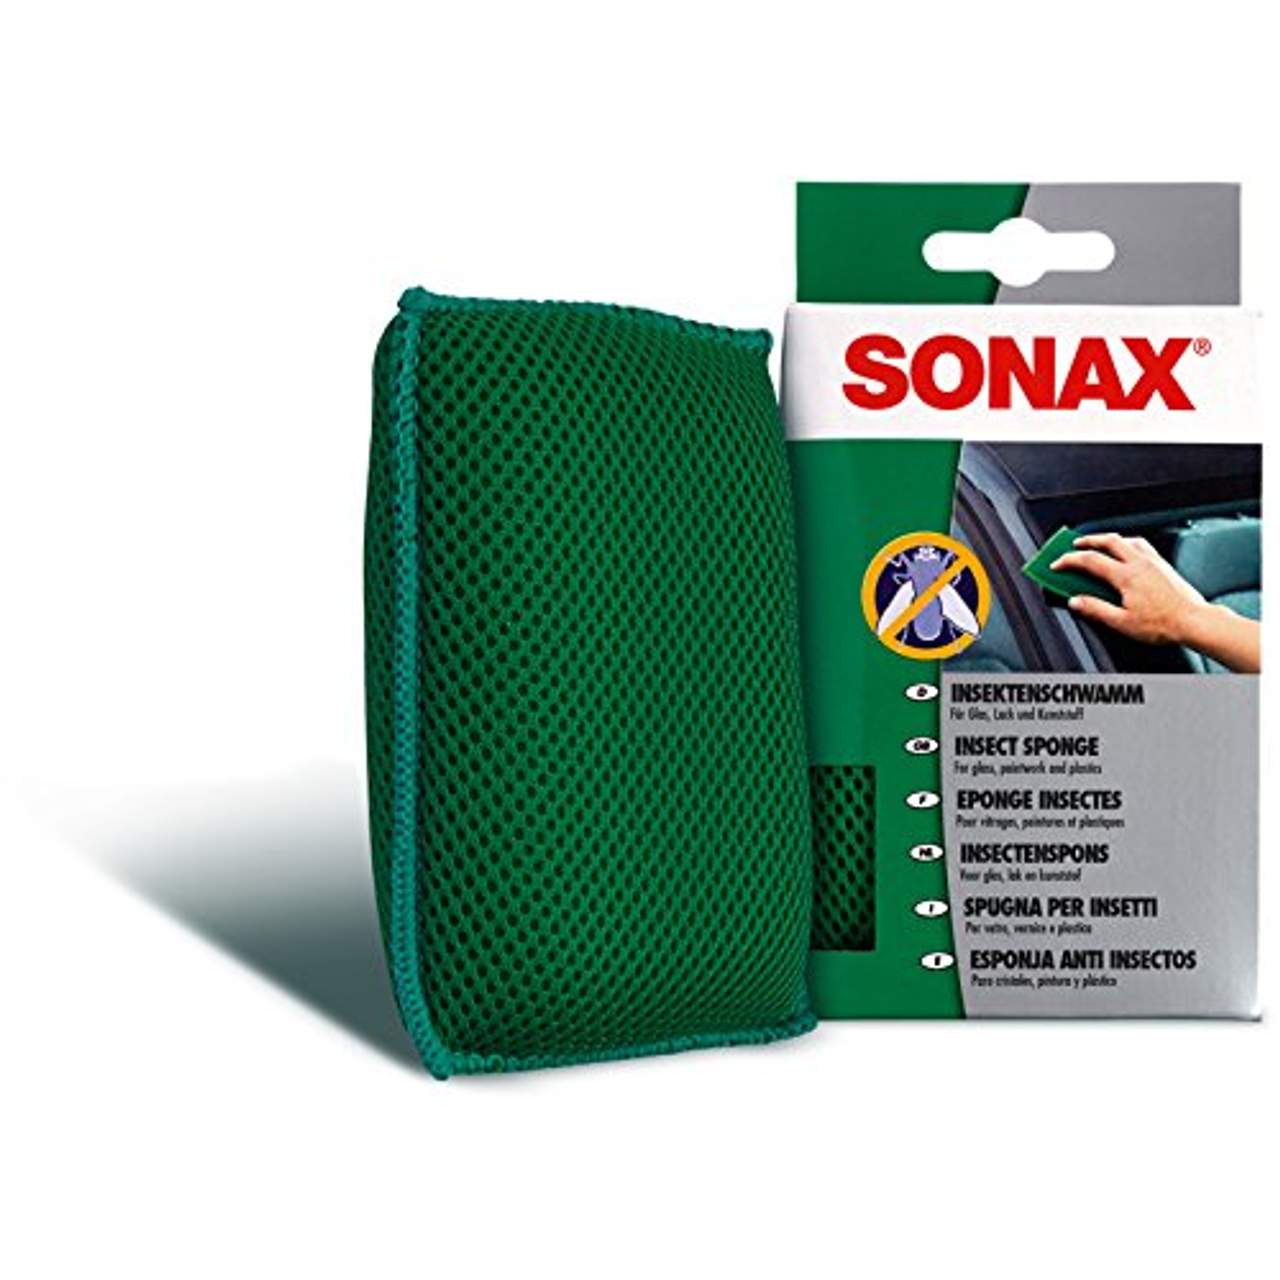 SONAX Insektenschwamm und Insektenenfterner Spezialreiniger